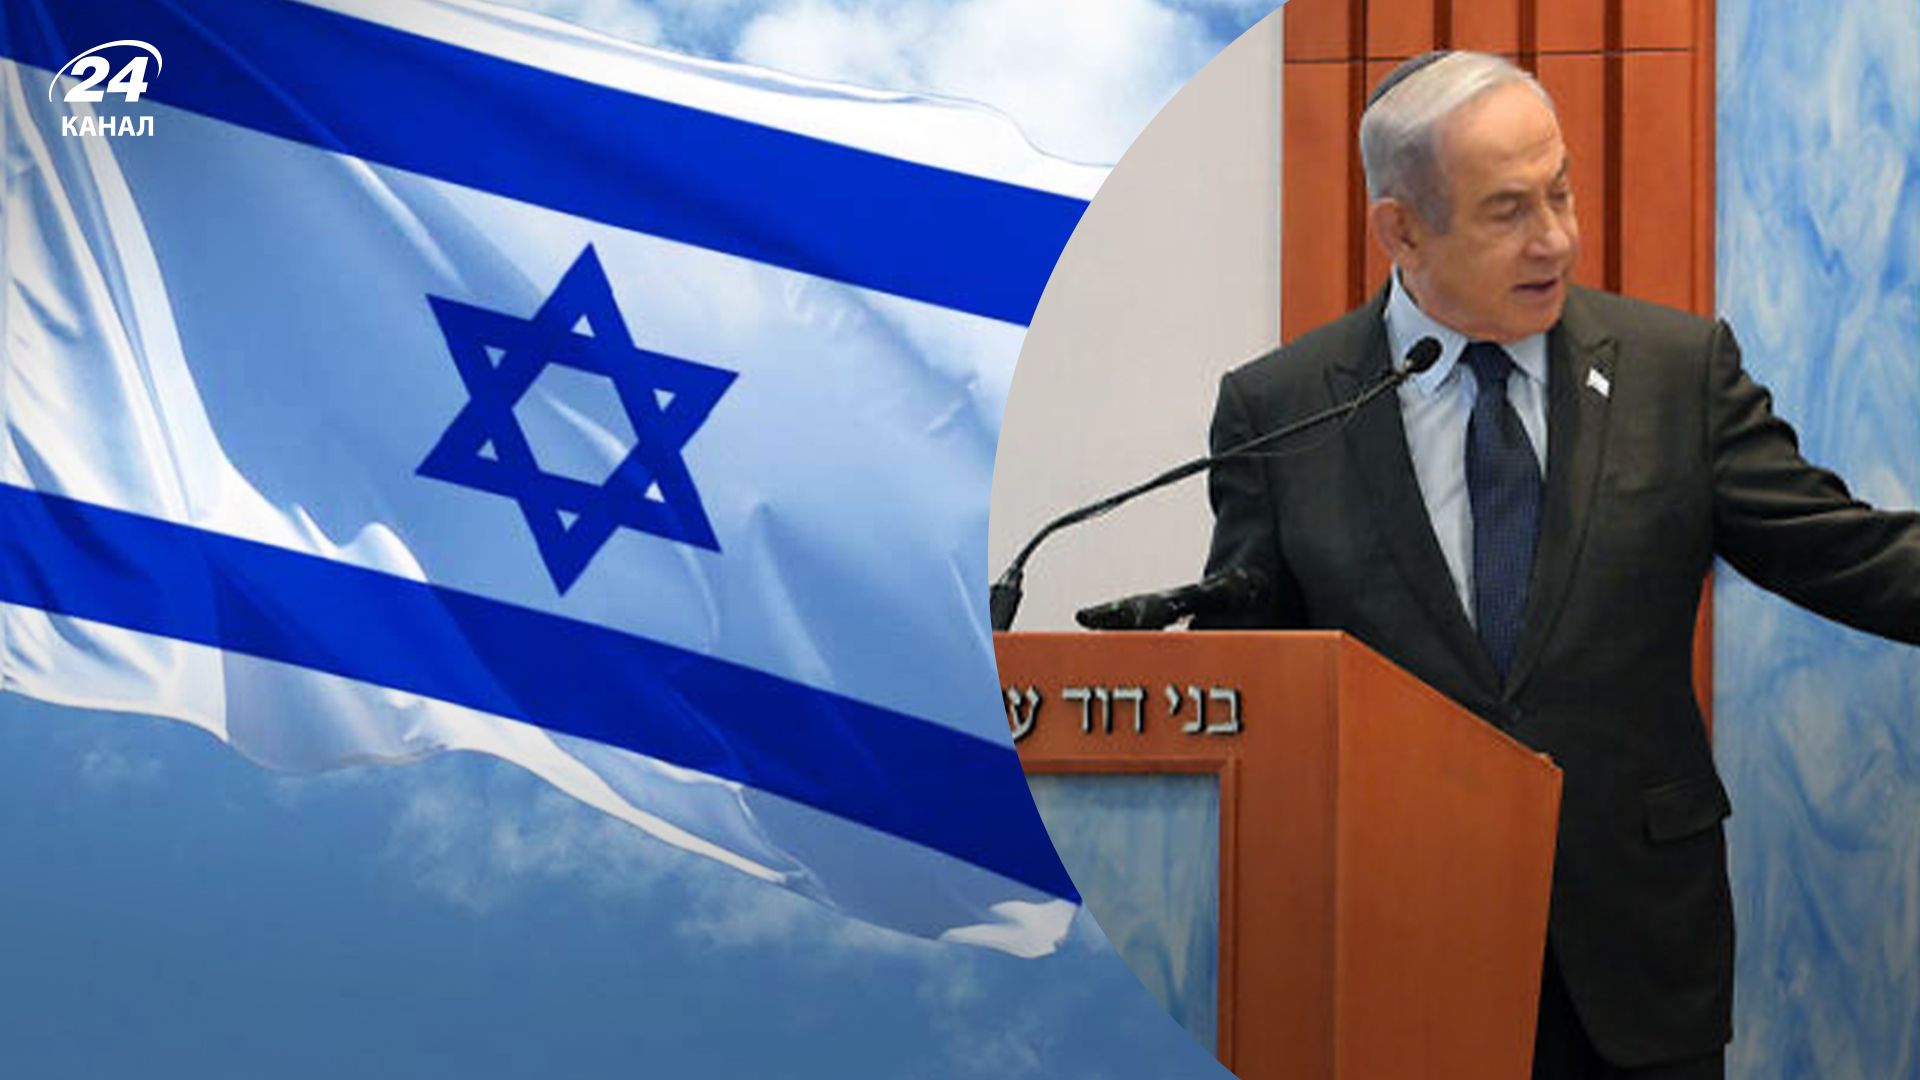 Нетаньяху сказал, что не освободит "тысячи террористов" ХАМАС